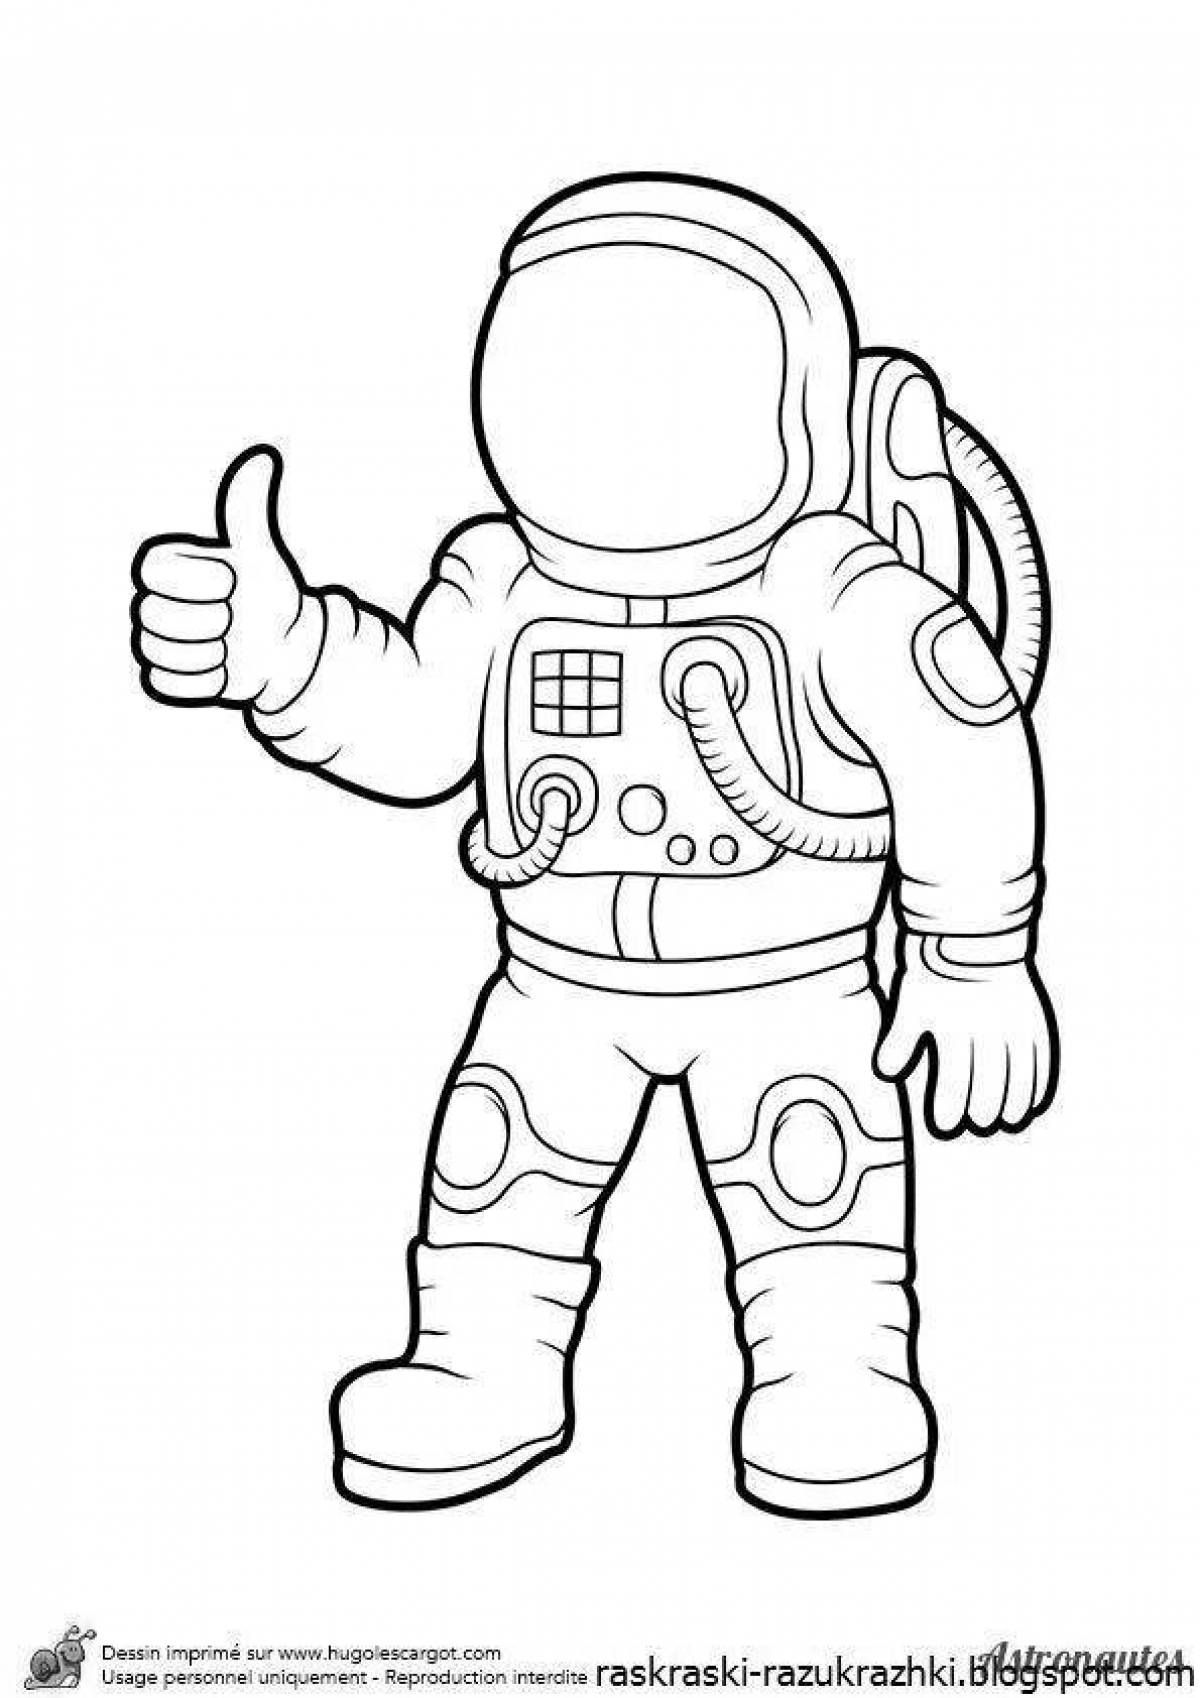 Как разукрасить космонавта. Раскраска космонавт в скафандре. Космонавт раскраска для детей. Раскраска Космонавта в скафандре для детей. Космонавт раскраска для малышей.